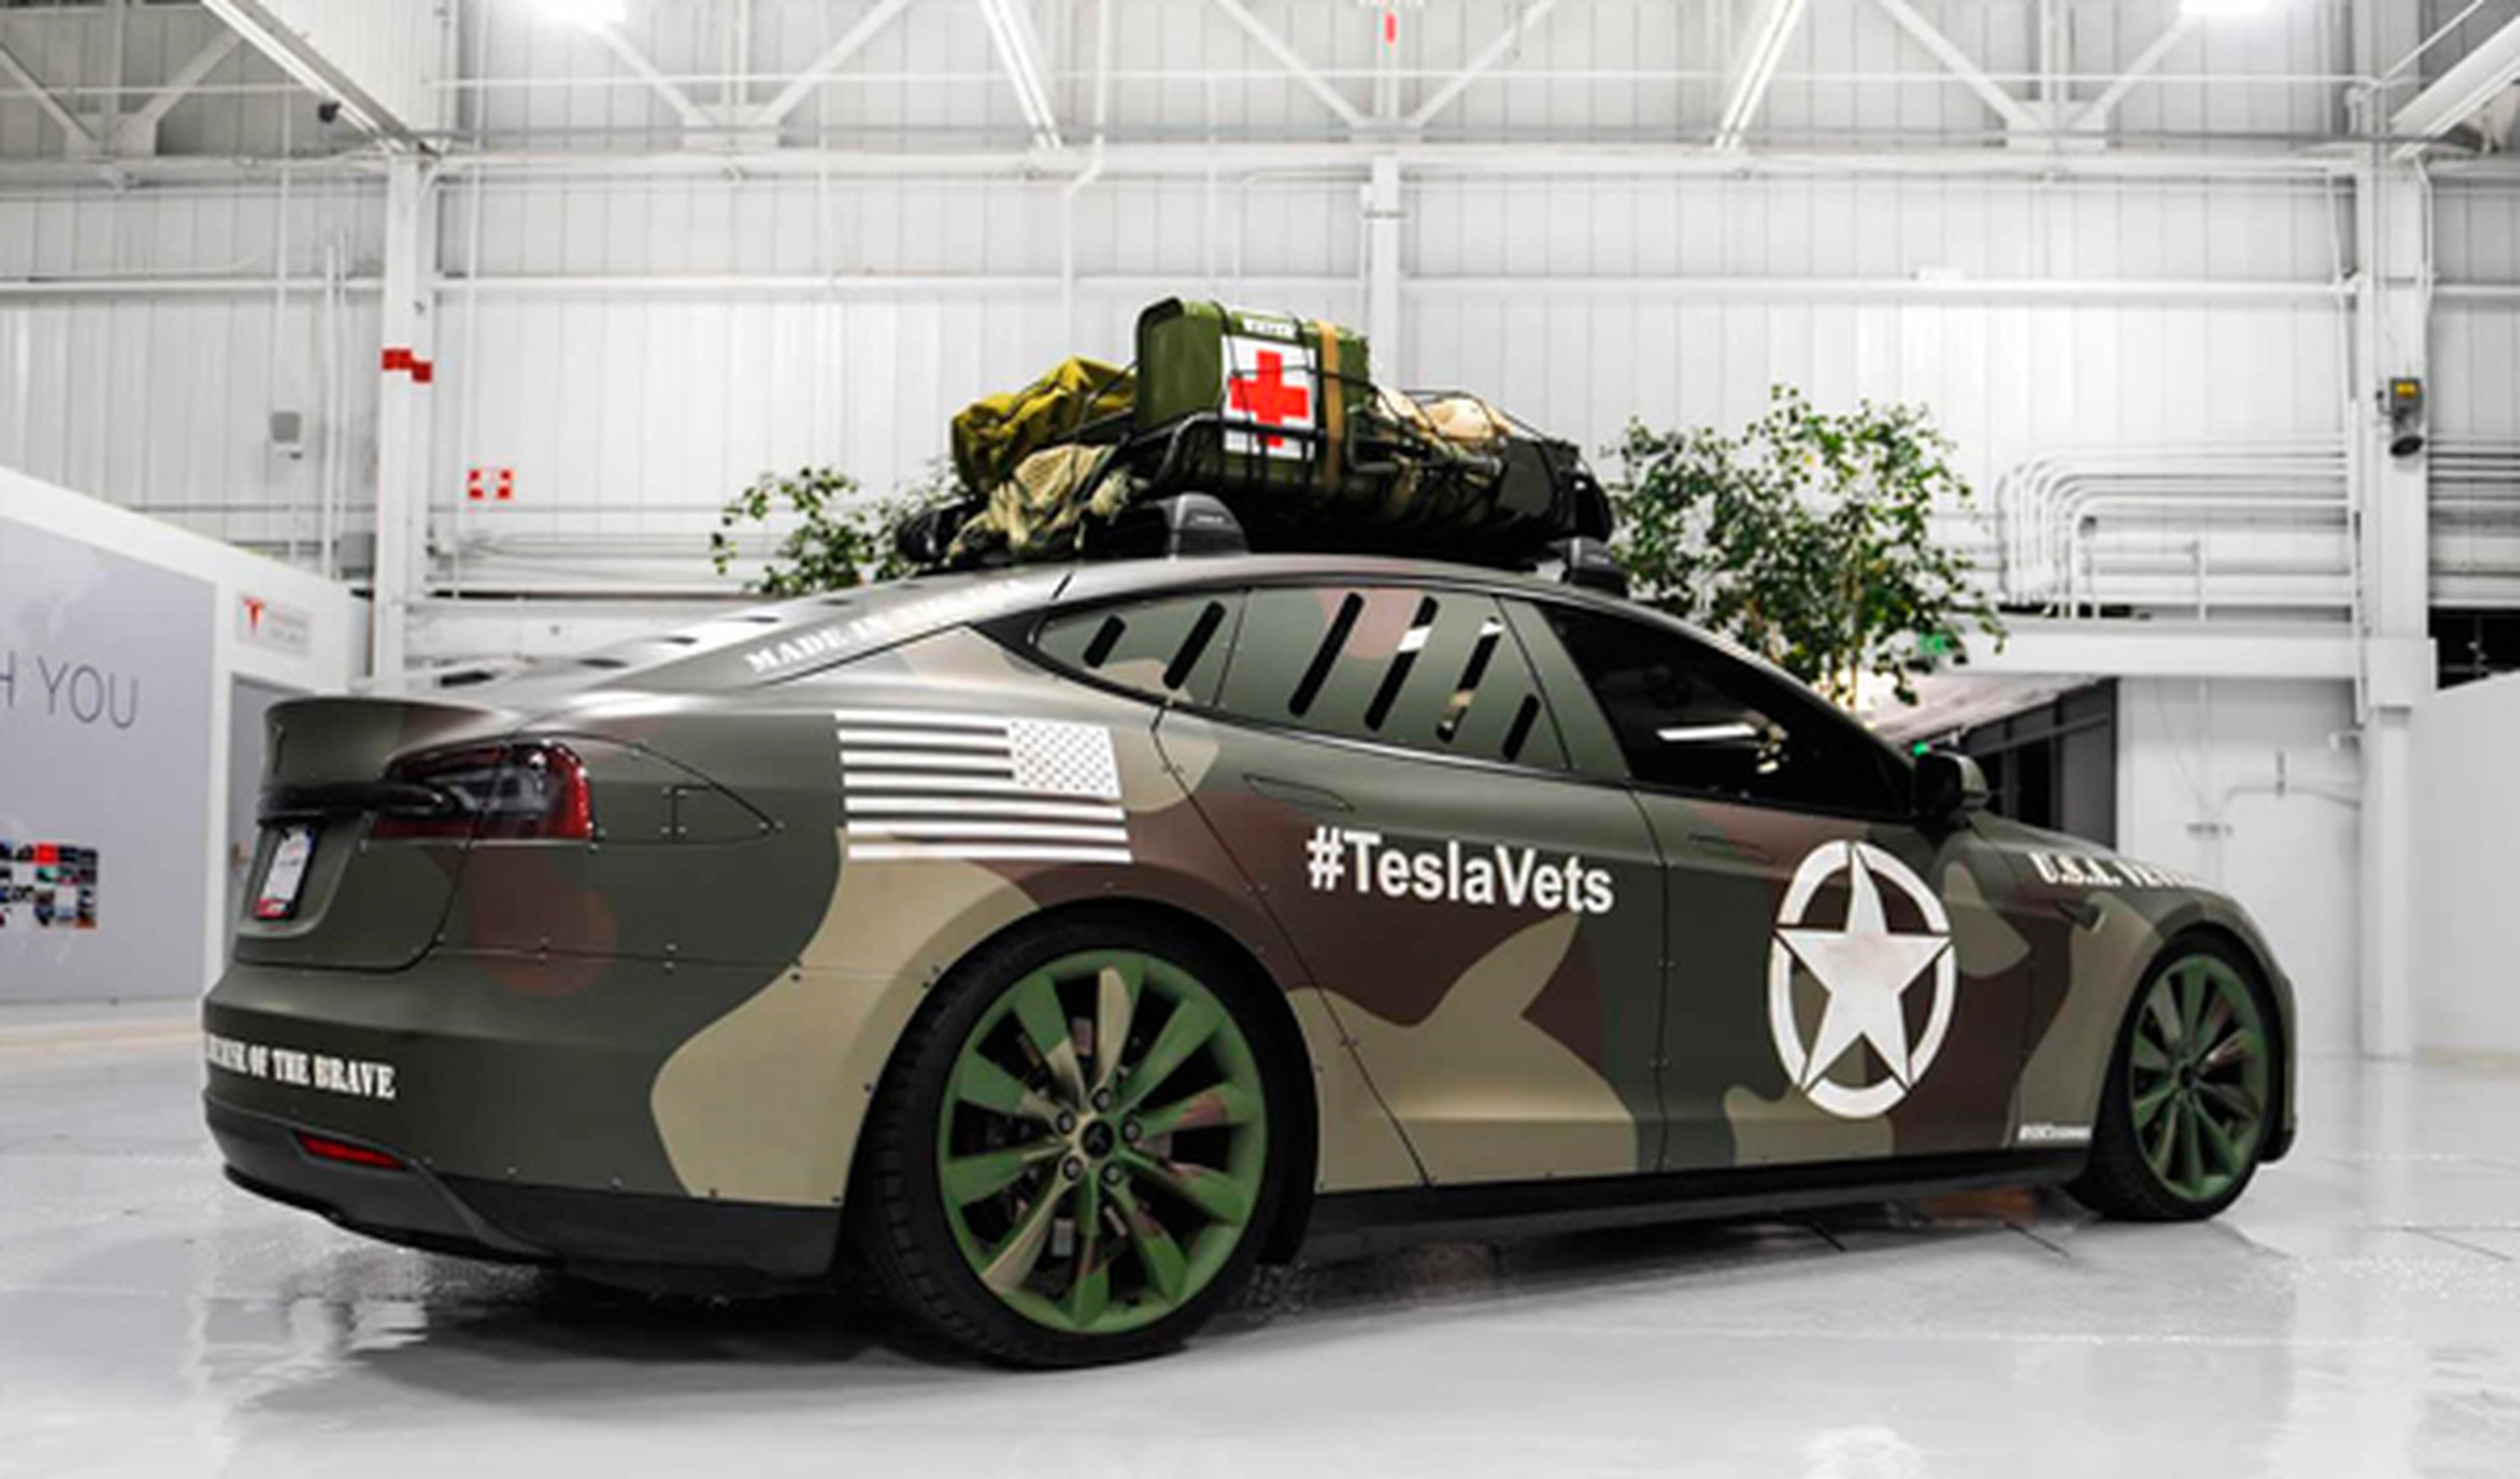 Tesla Model S exclusivo en memoria de veteranos de guerra